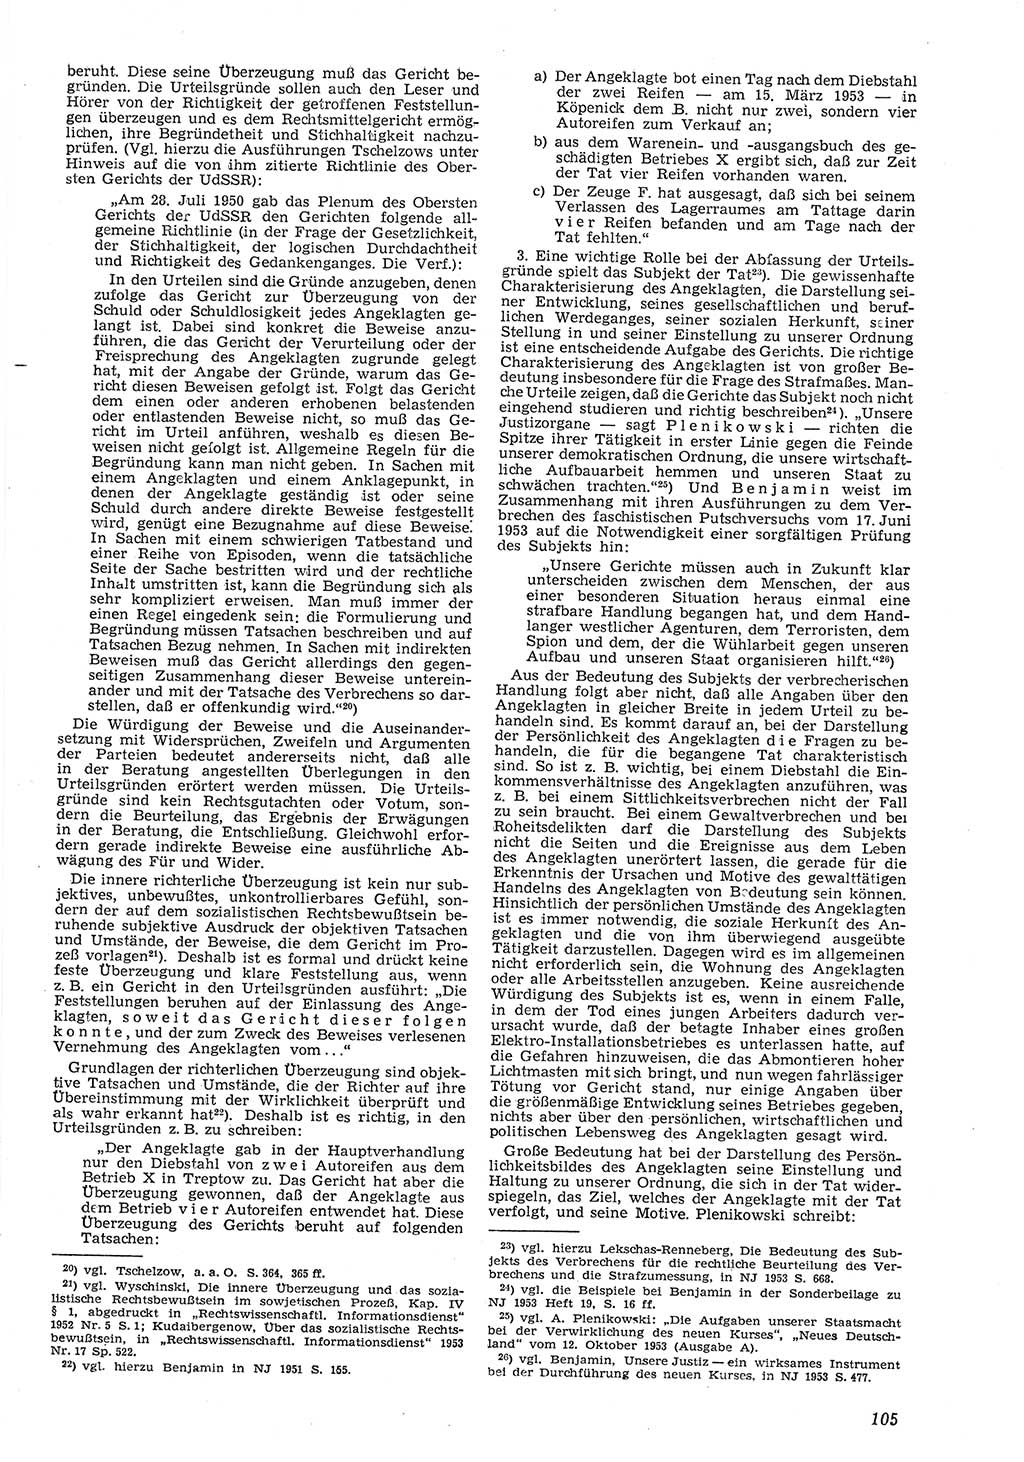 Neue Justiz (NJ), Zeitschrift für Recht und Rechtswissenschaft [Deutsche Demokratische Republik (DDR)], 8. Jahrgang 1954, Seite 105 (NJ DDR 1954, S. 105)